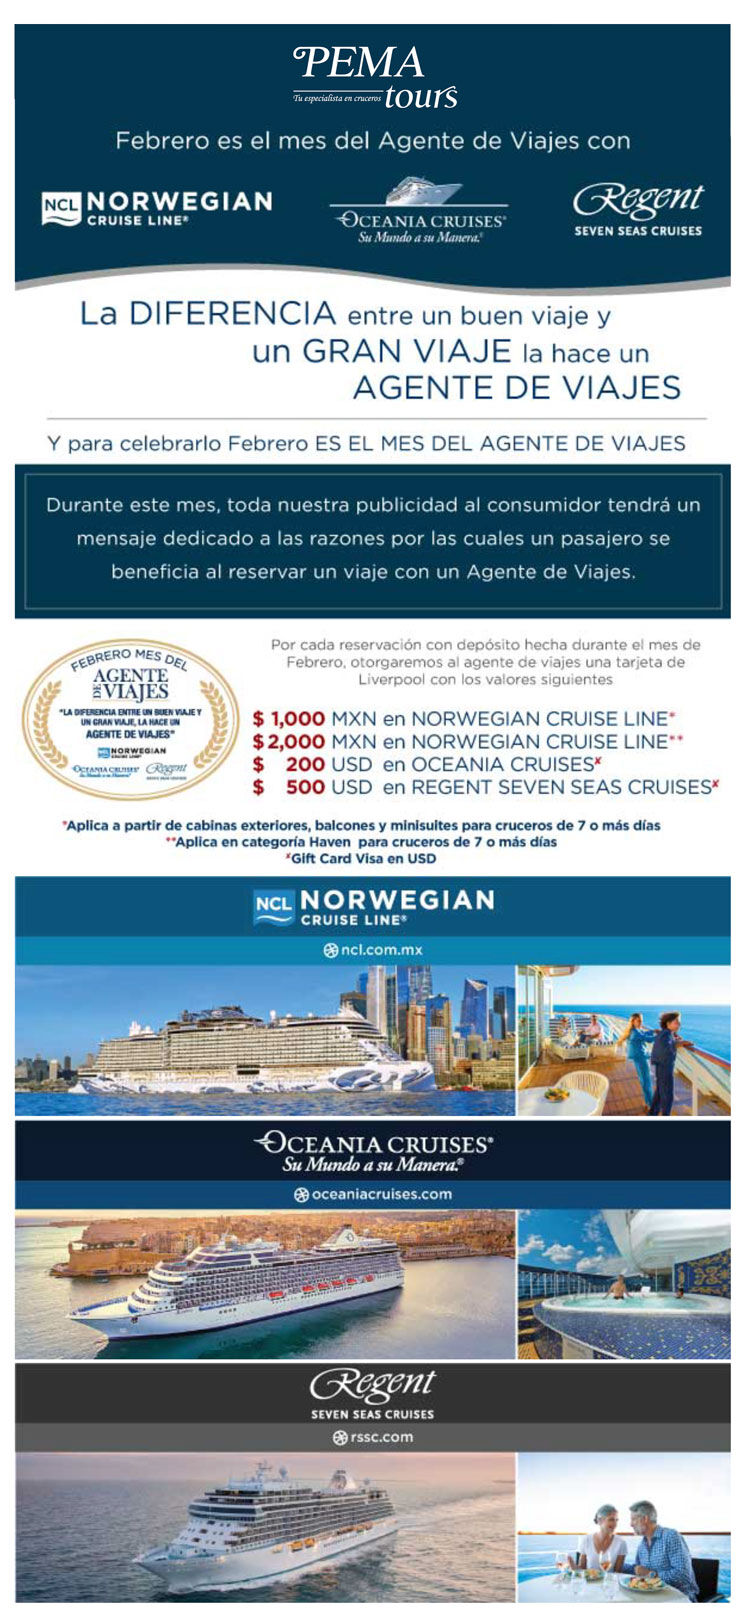 Incentivo para agentes de viajes en el mes de Febrero con Norwegian Cruise Line, Oceania Cruises y Regent Seven Seas